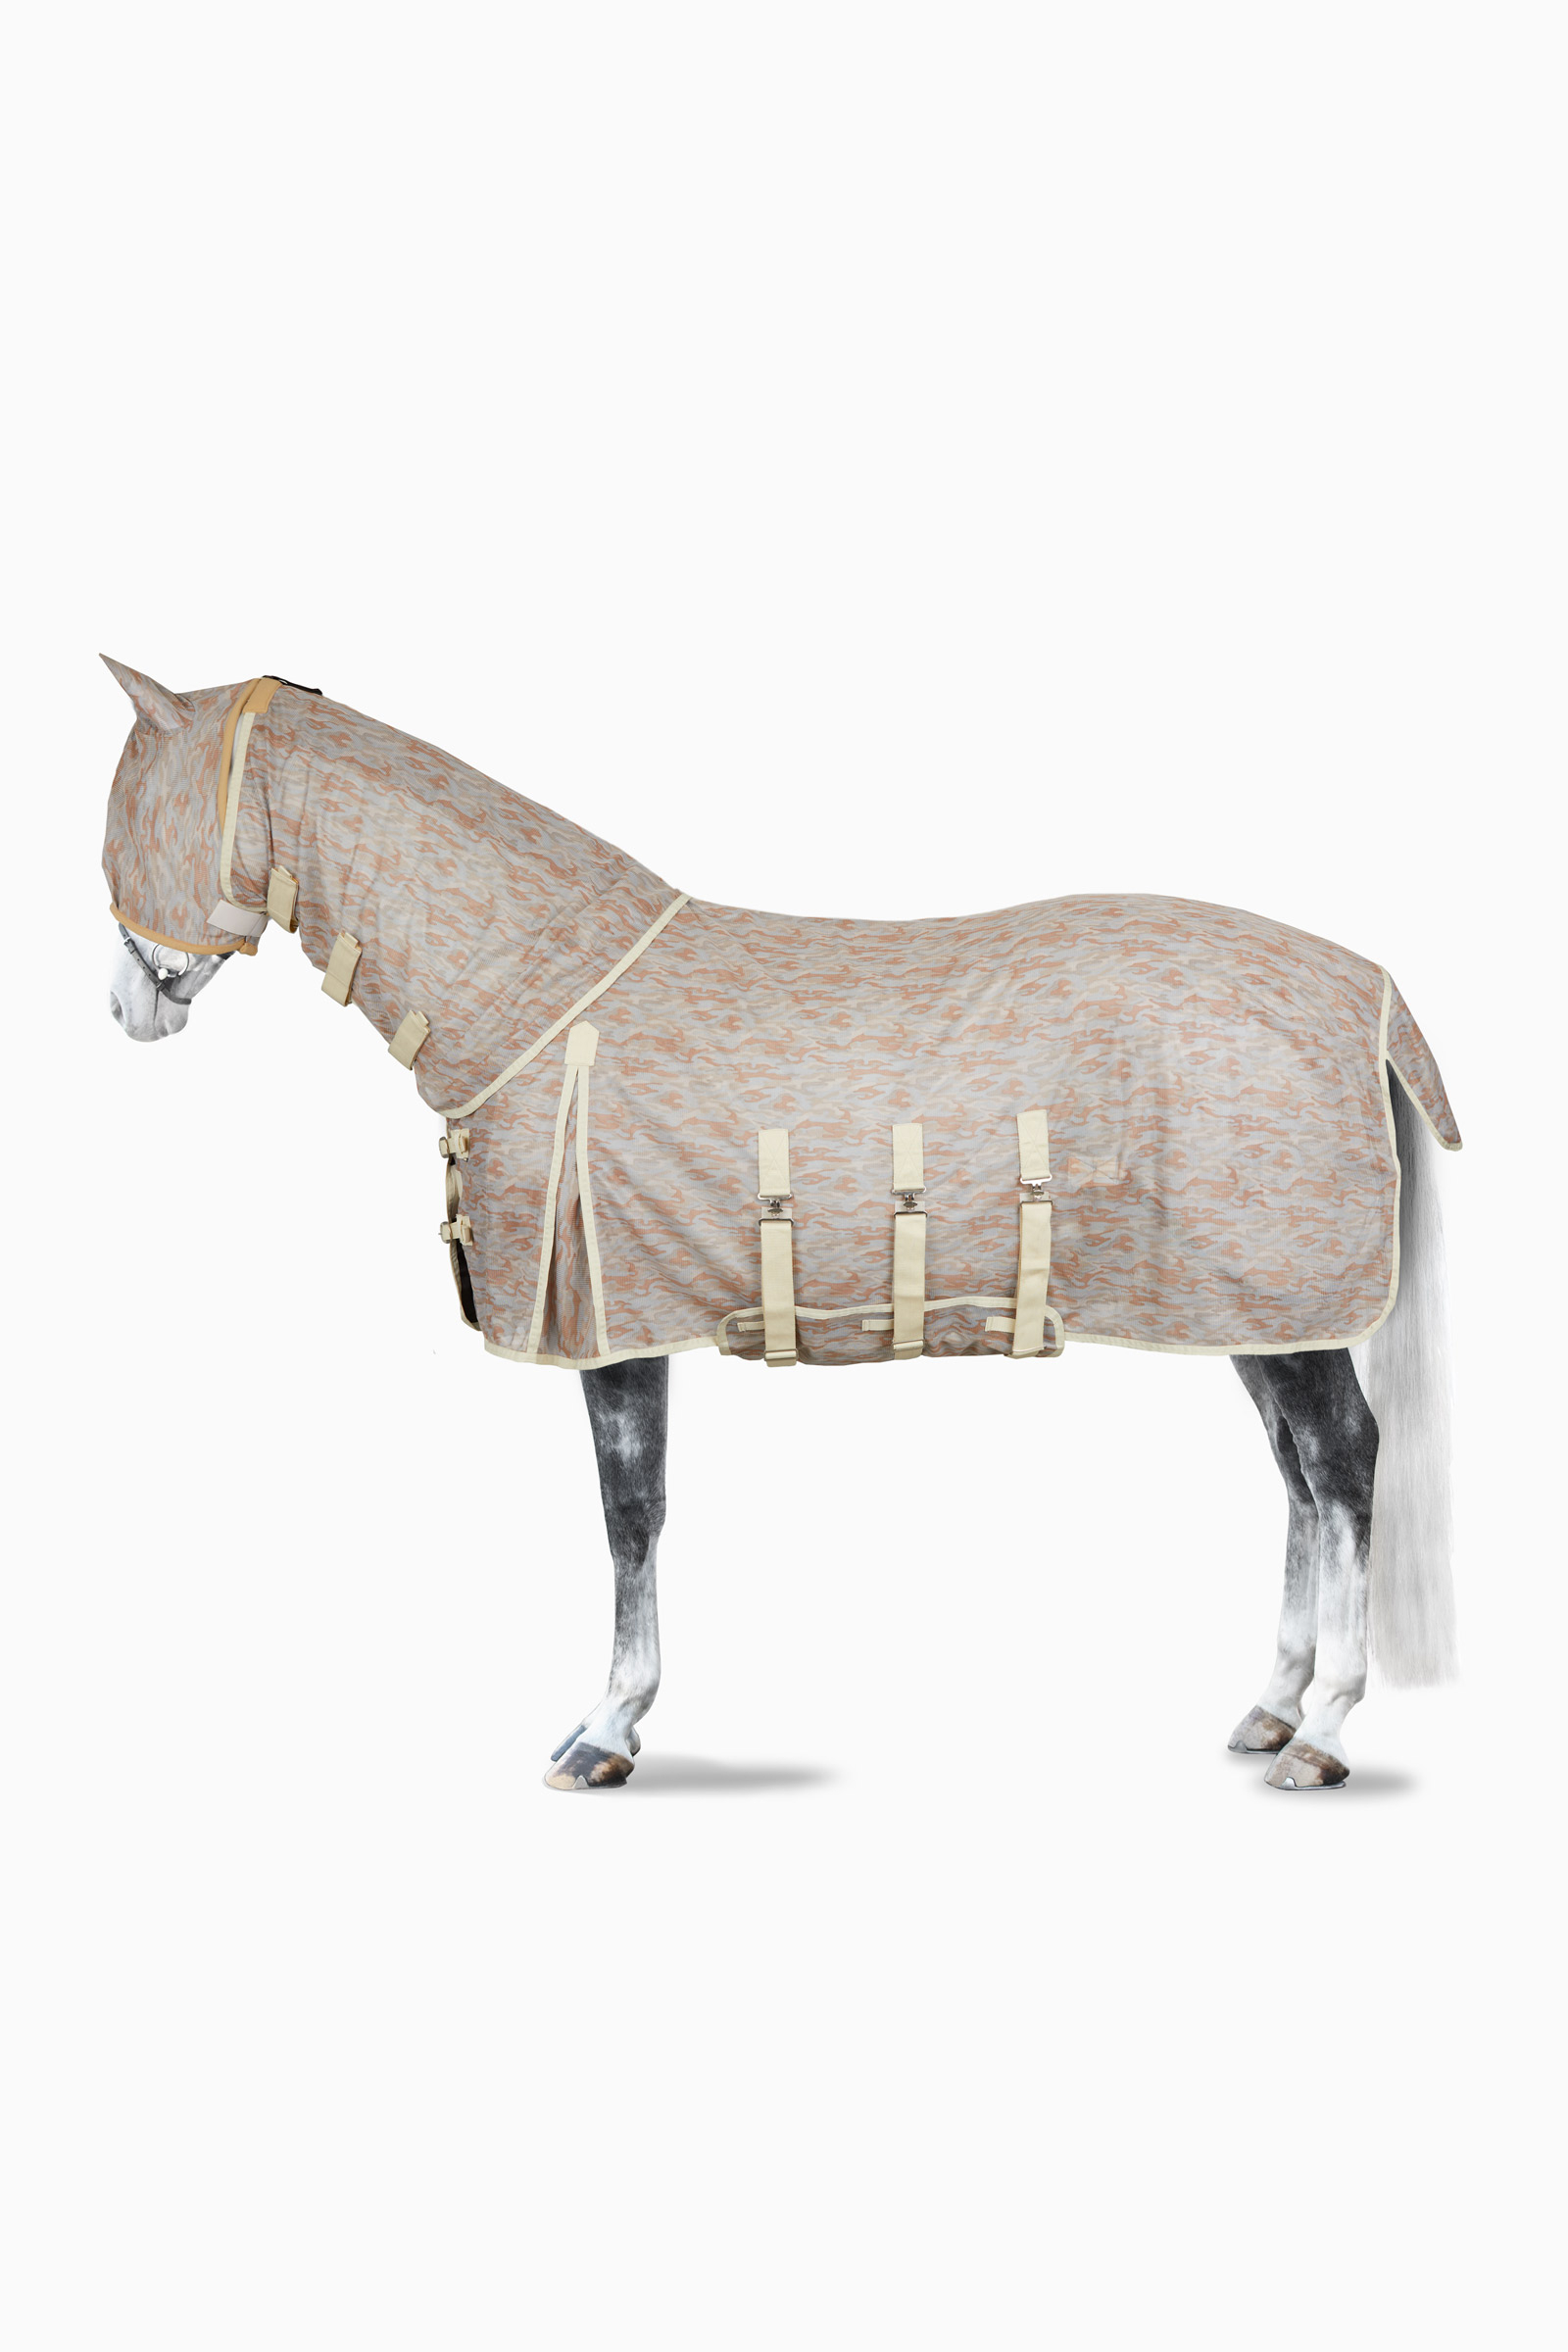 Paardenartikelen, online paardenwinkel, voor paarden |Horze